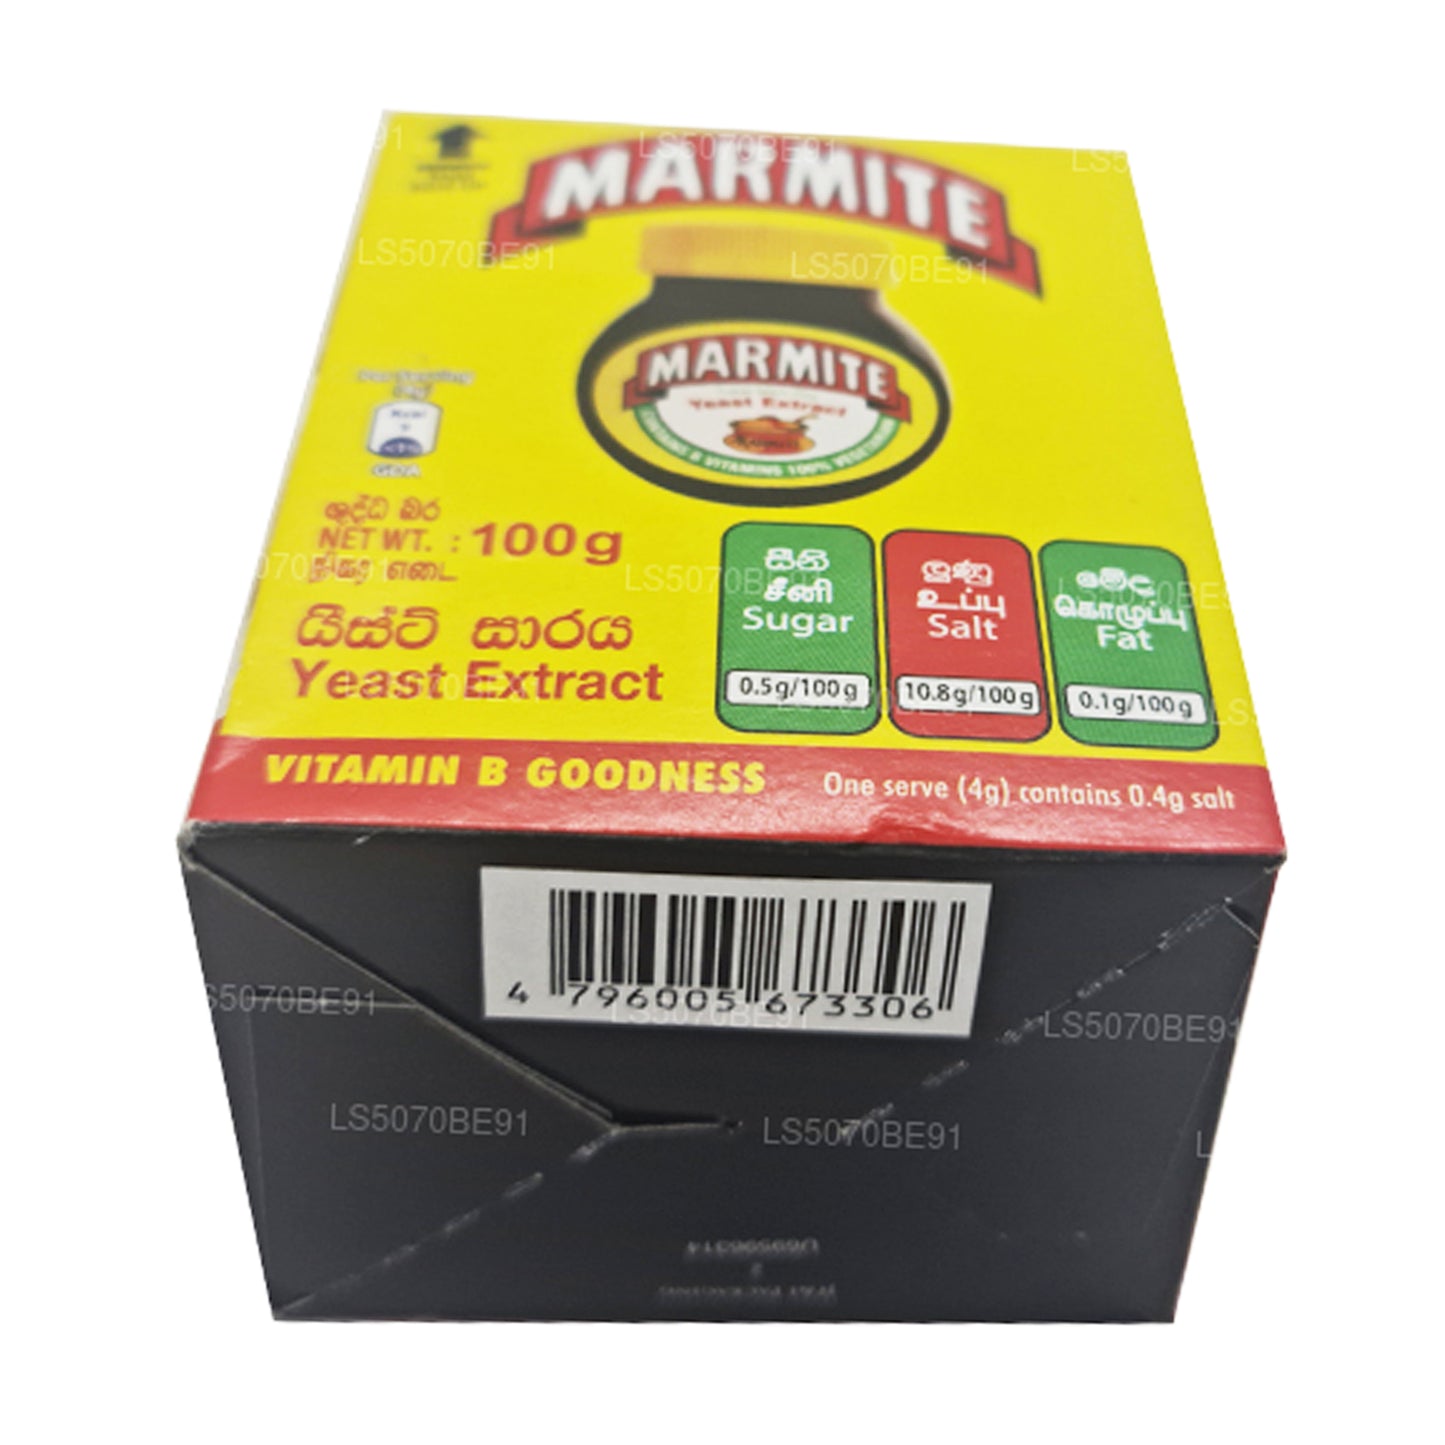 Extrait de levure de marmite (100 g)